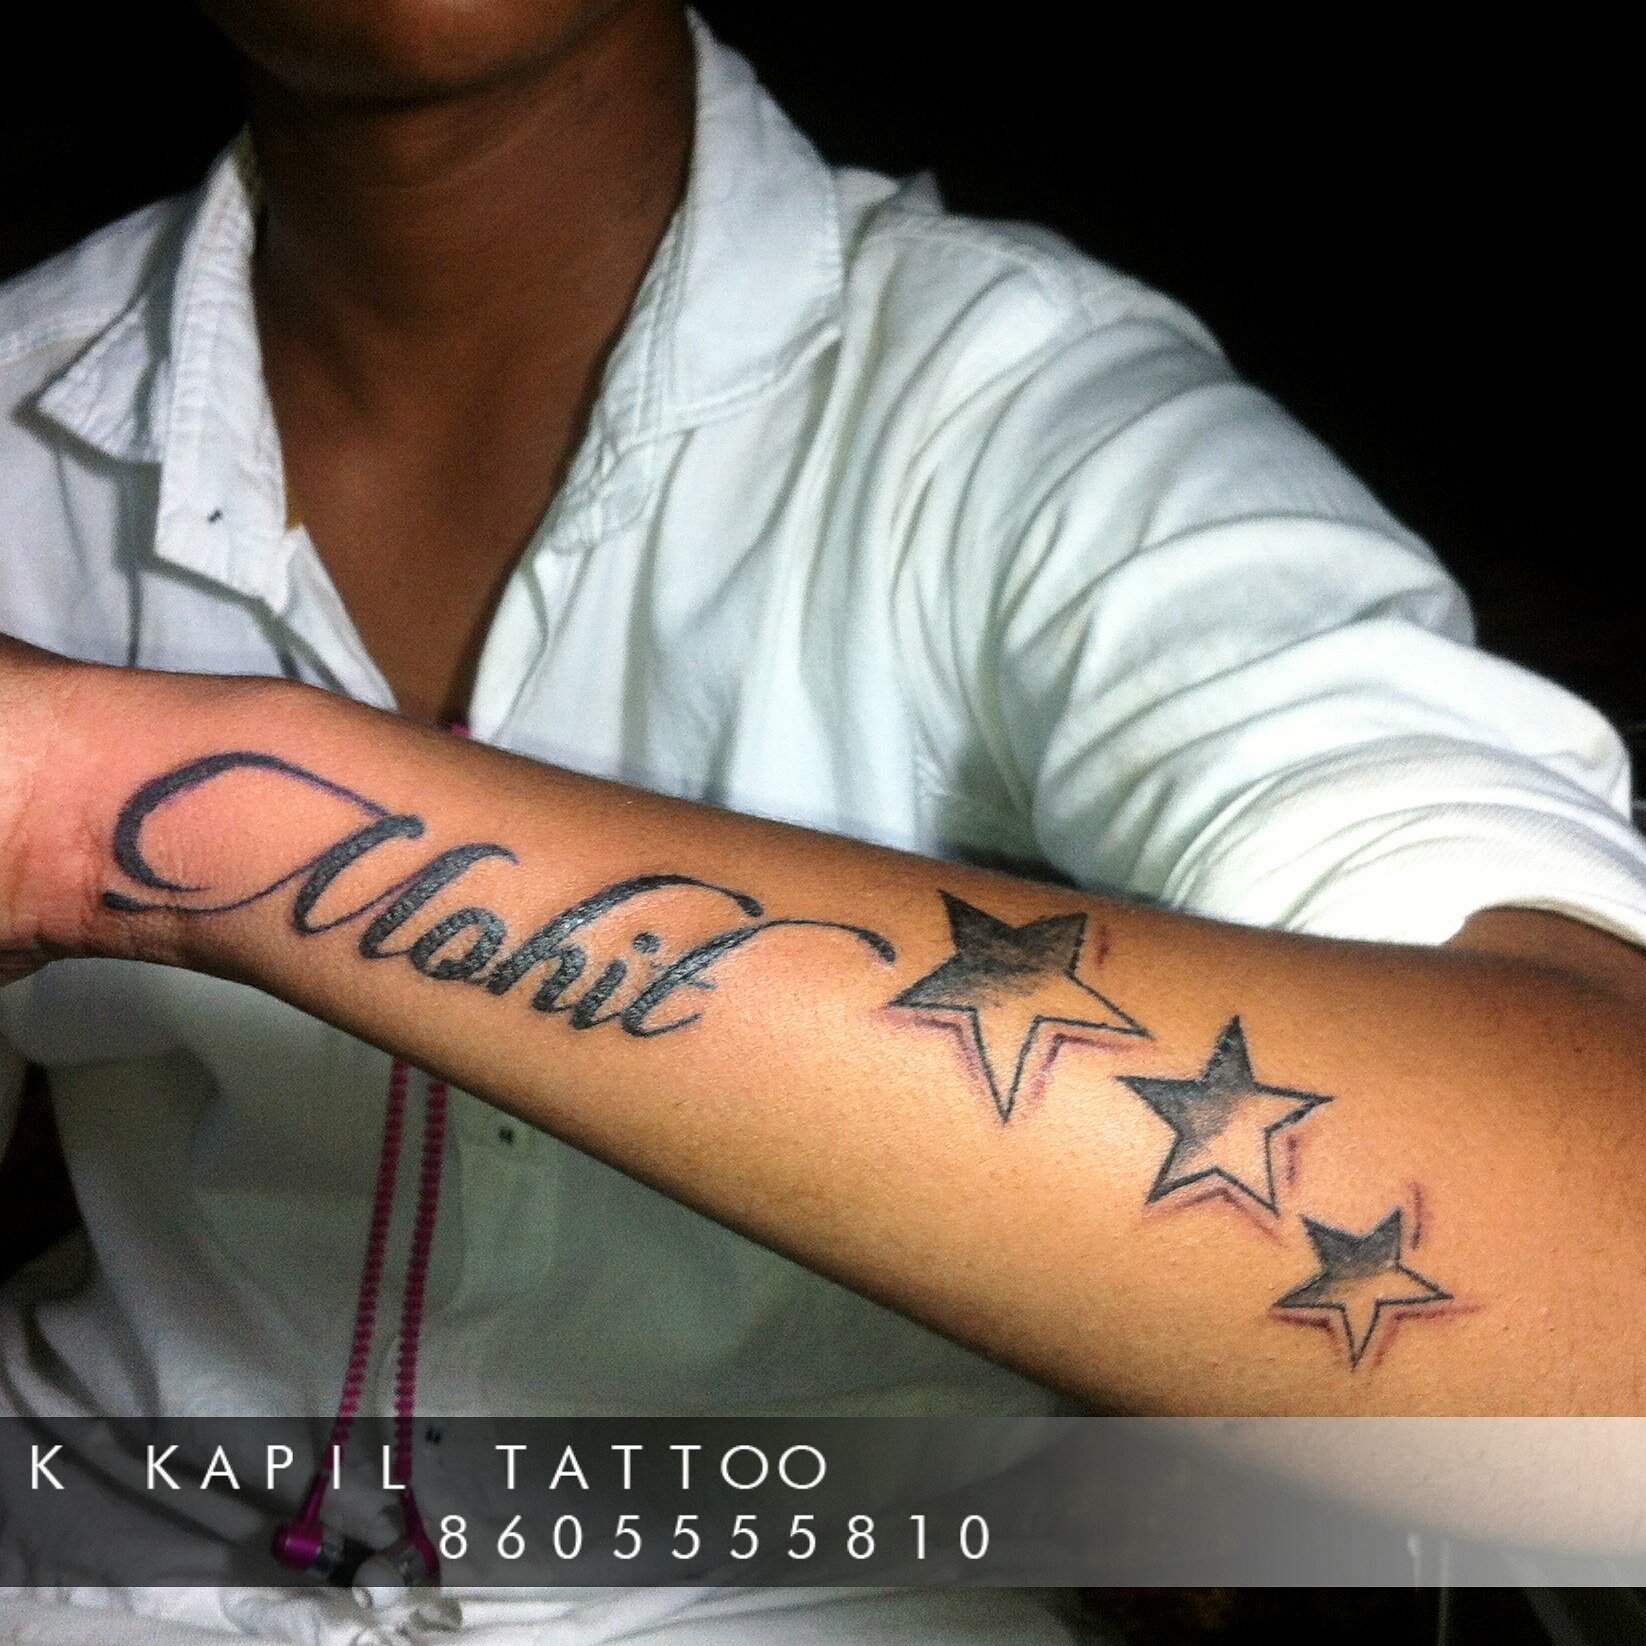 Tattoo uploaded by Mohit Kumar  My First tattoo  Maa Paa  Tattoodo